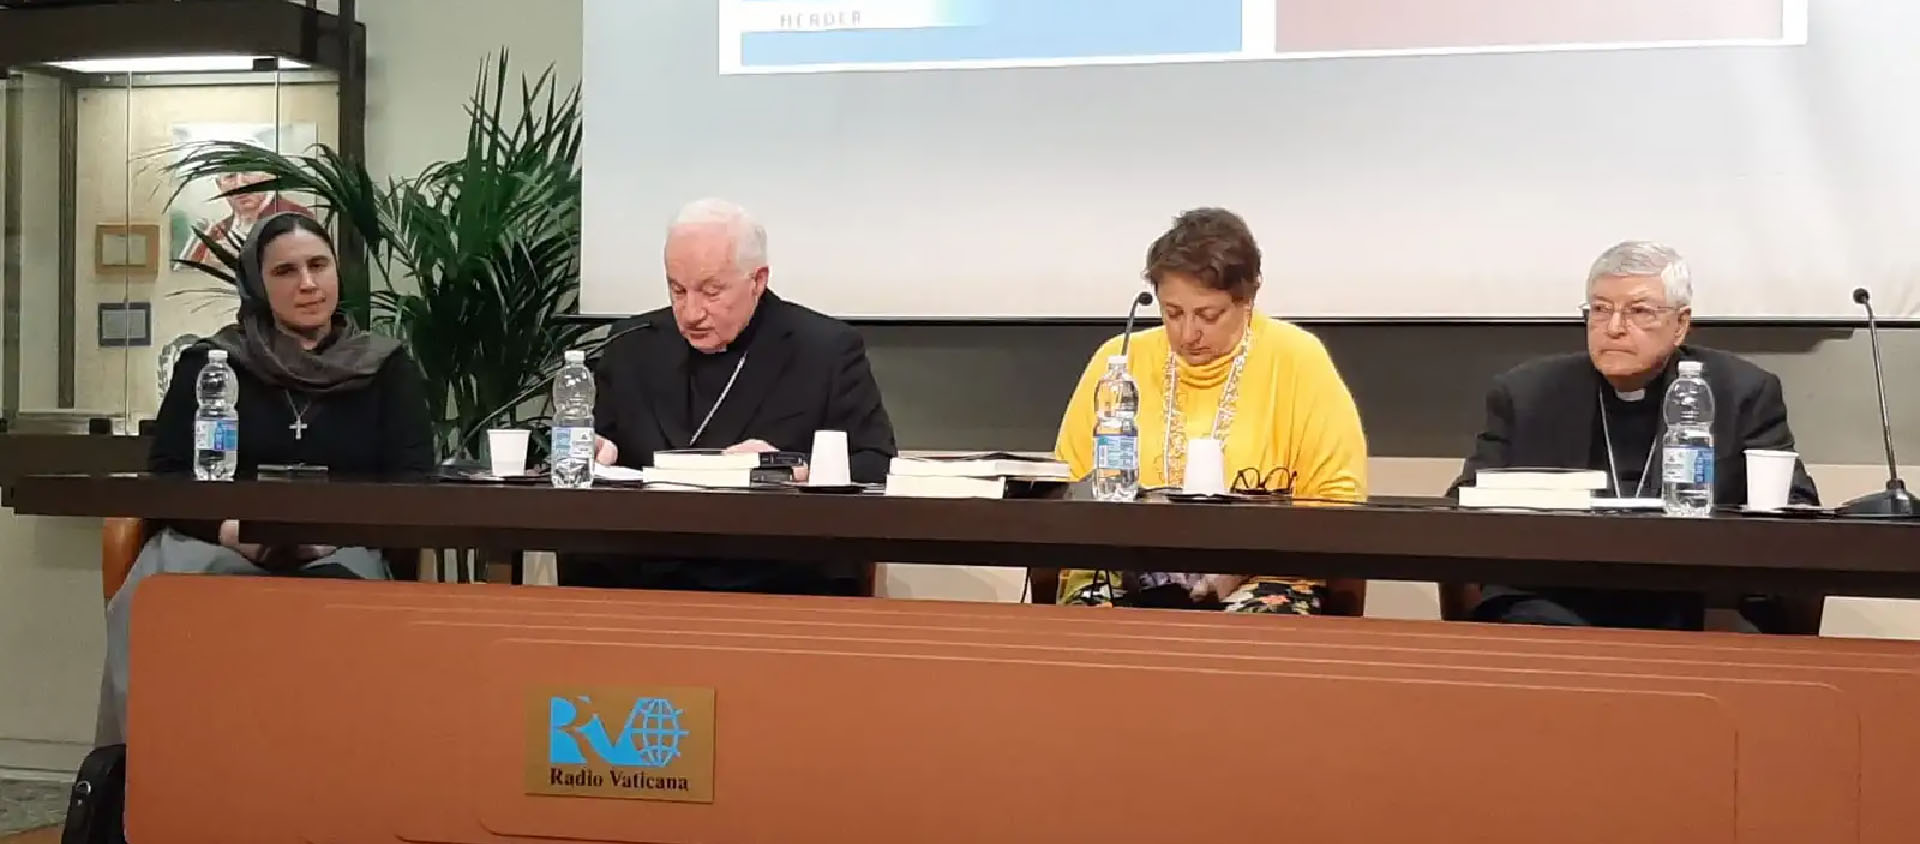 Le cardinal Ouellet, entouré par Sr Linda Pocher et le cardinal Gianfranco Ghirlanda lors de la conférence de presse organisée à Radio Vatican le 20 février 2023 | © Cyprien Viet